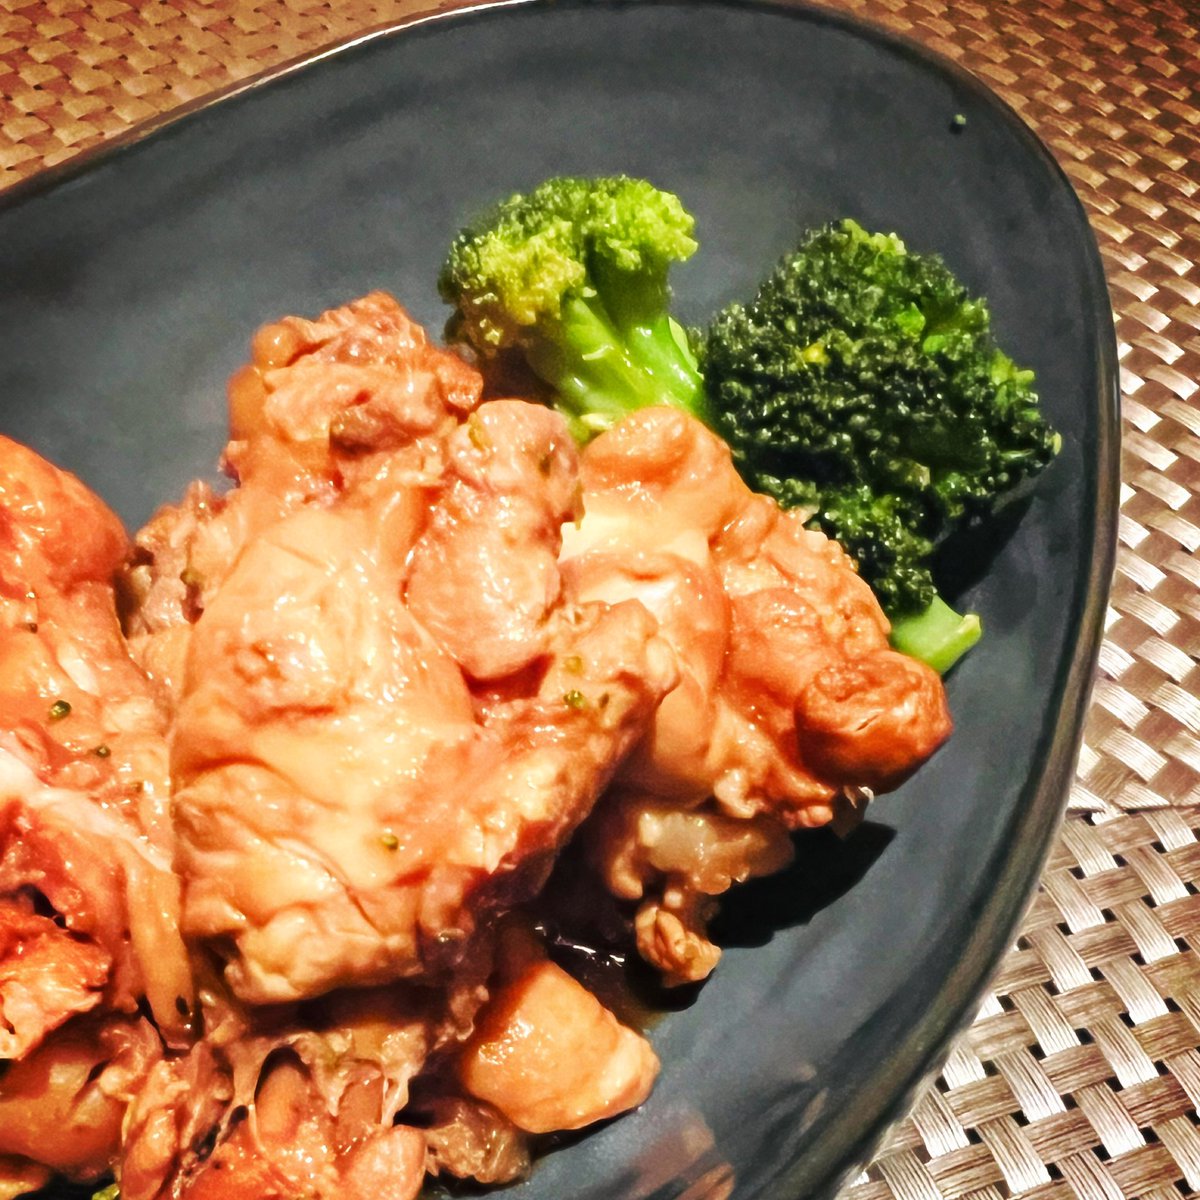 パクパクパクパクパク😋😋
ただいまご飯〜😆🎉
#チキンのさっぱり煮 しちゃってうんま😍
#低カロリーな予感 😐